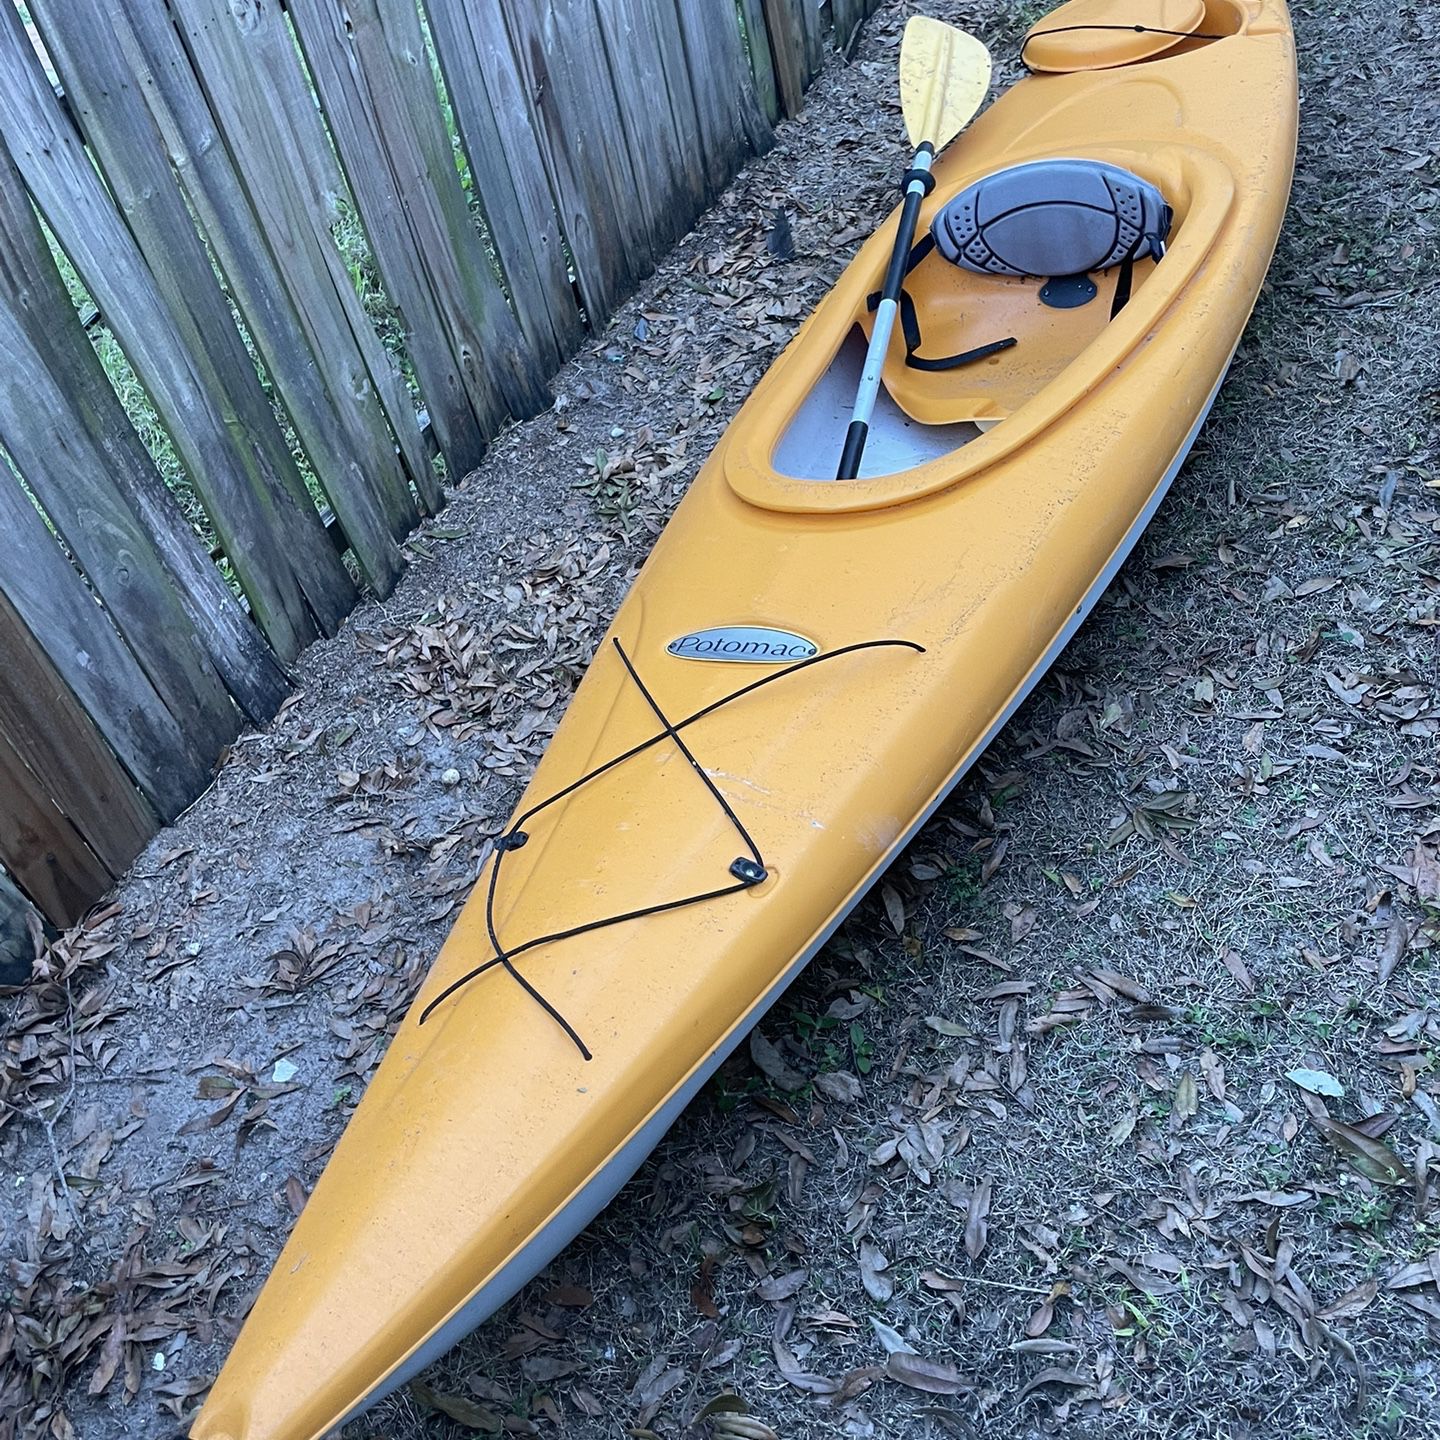 Kayak For Sale - $200